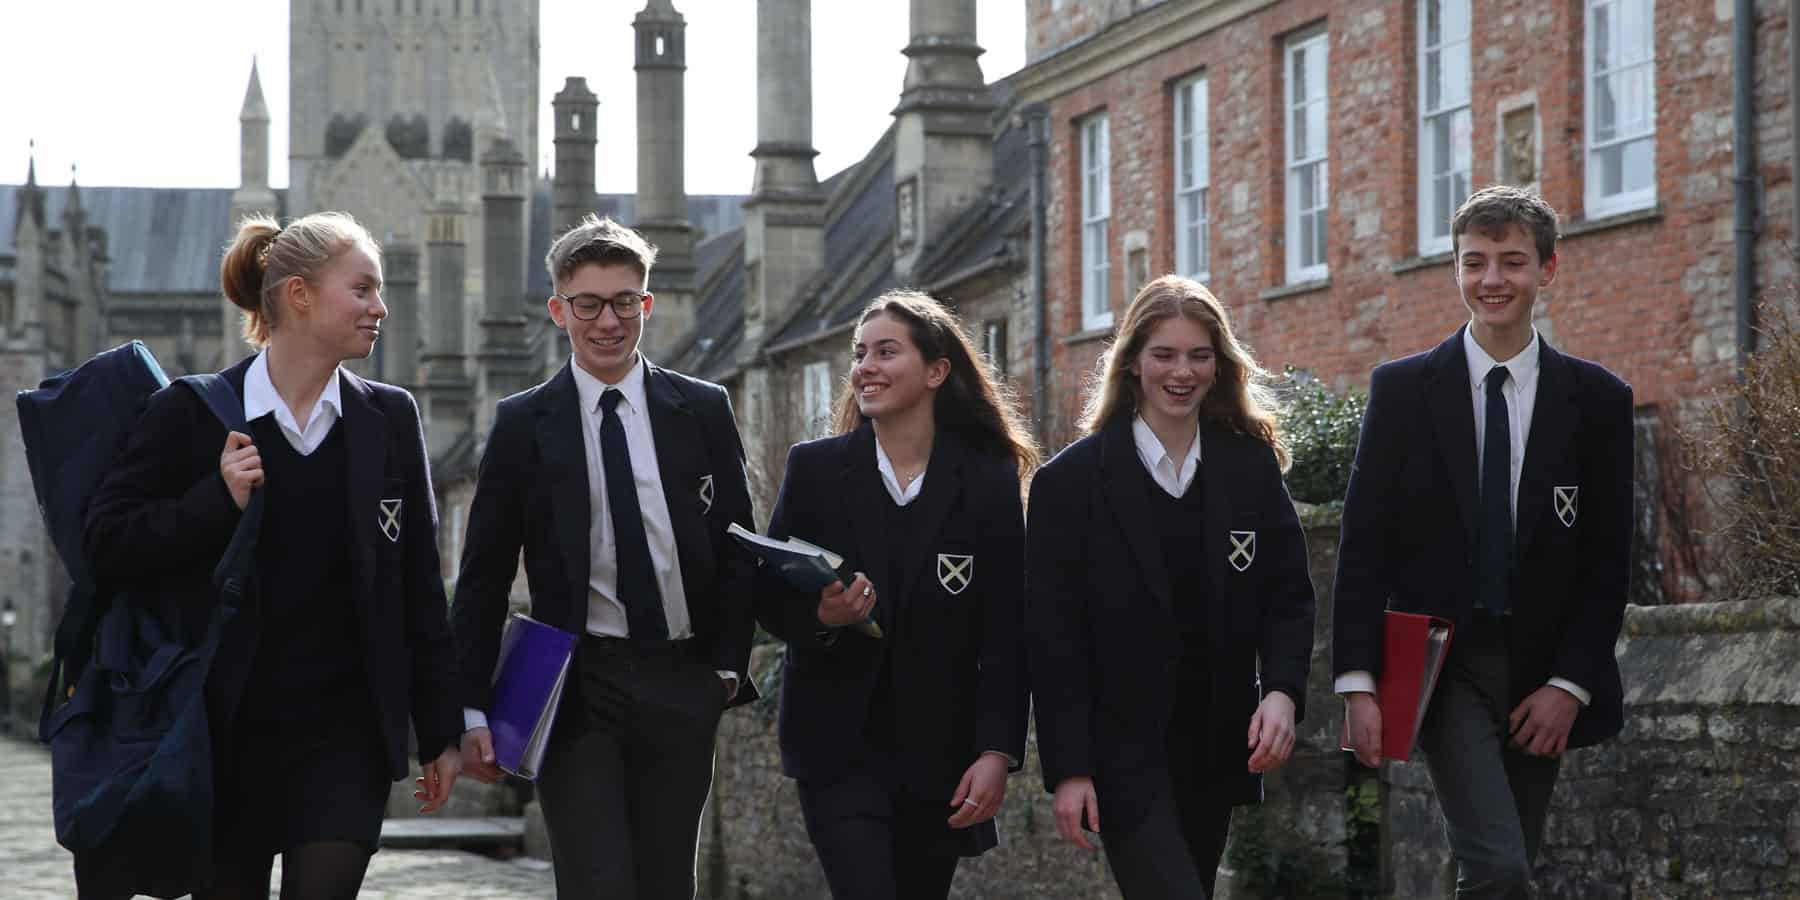 Year 9 pupils walking down Vicars Close